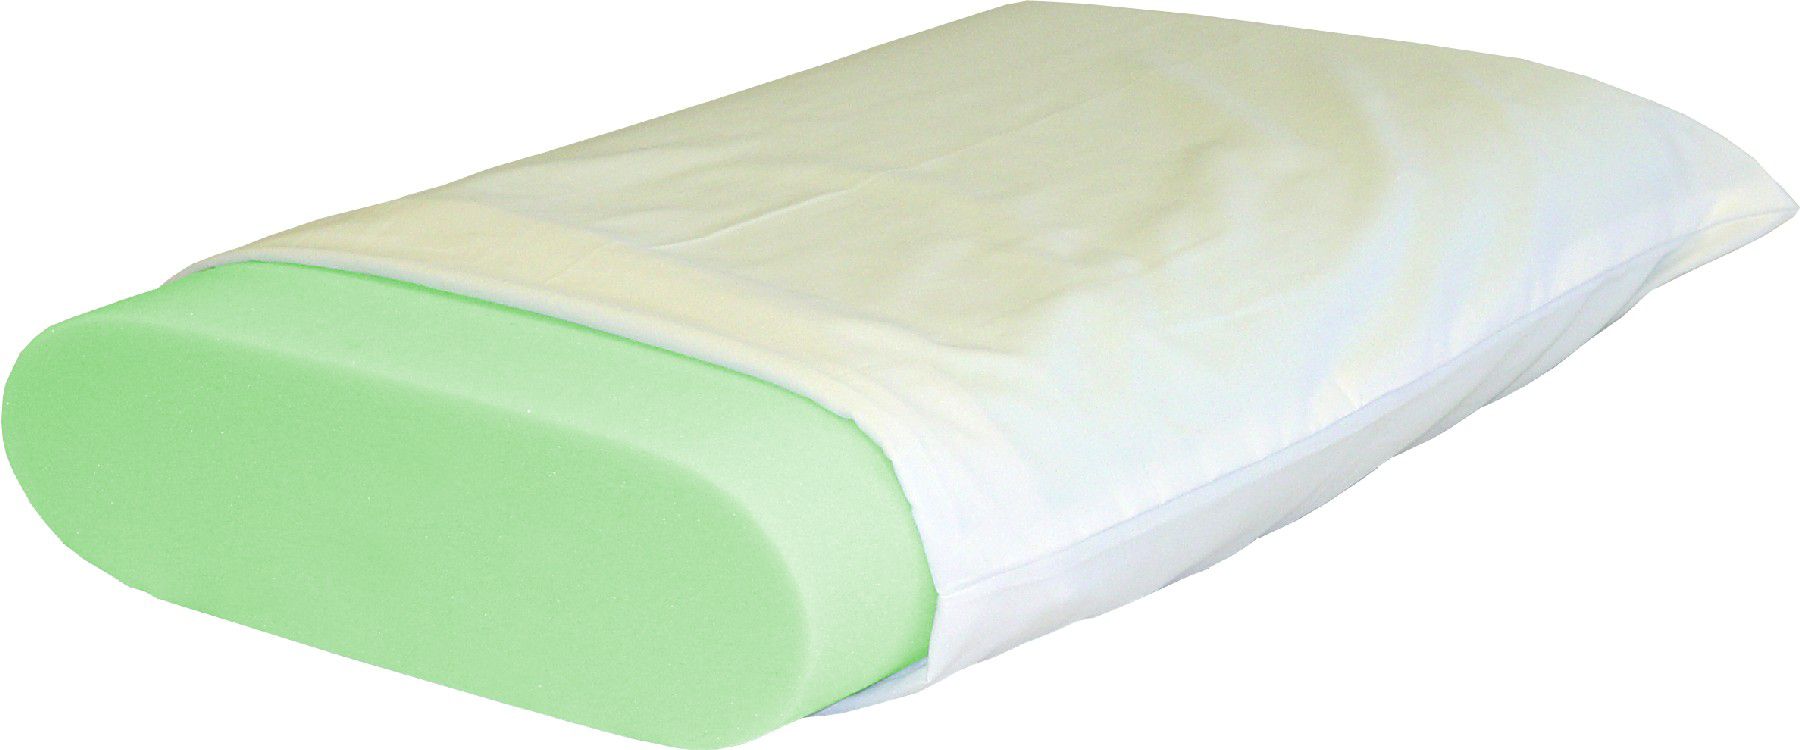 Science of Sleep Polar Foam Memory Foam Pillow